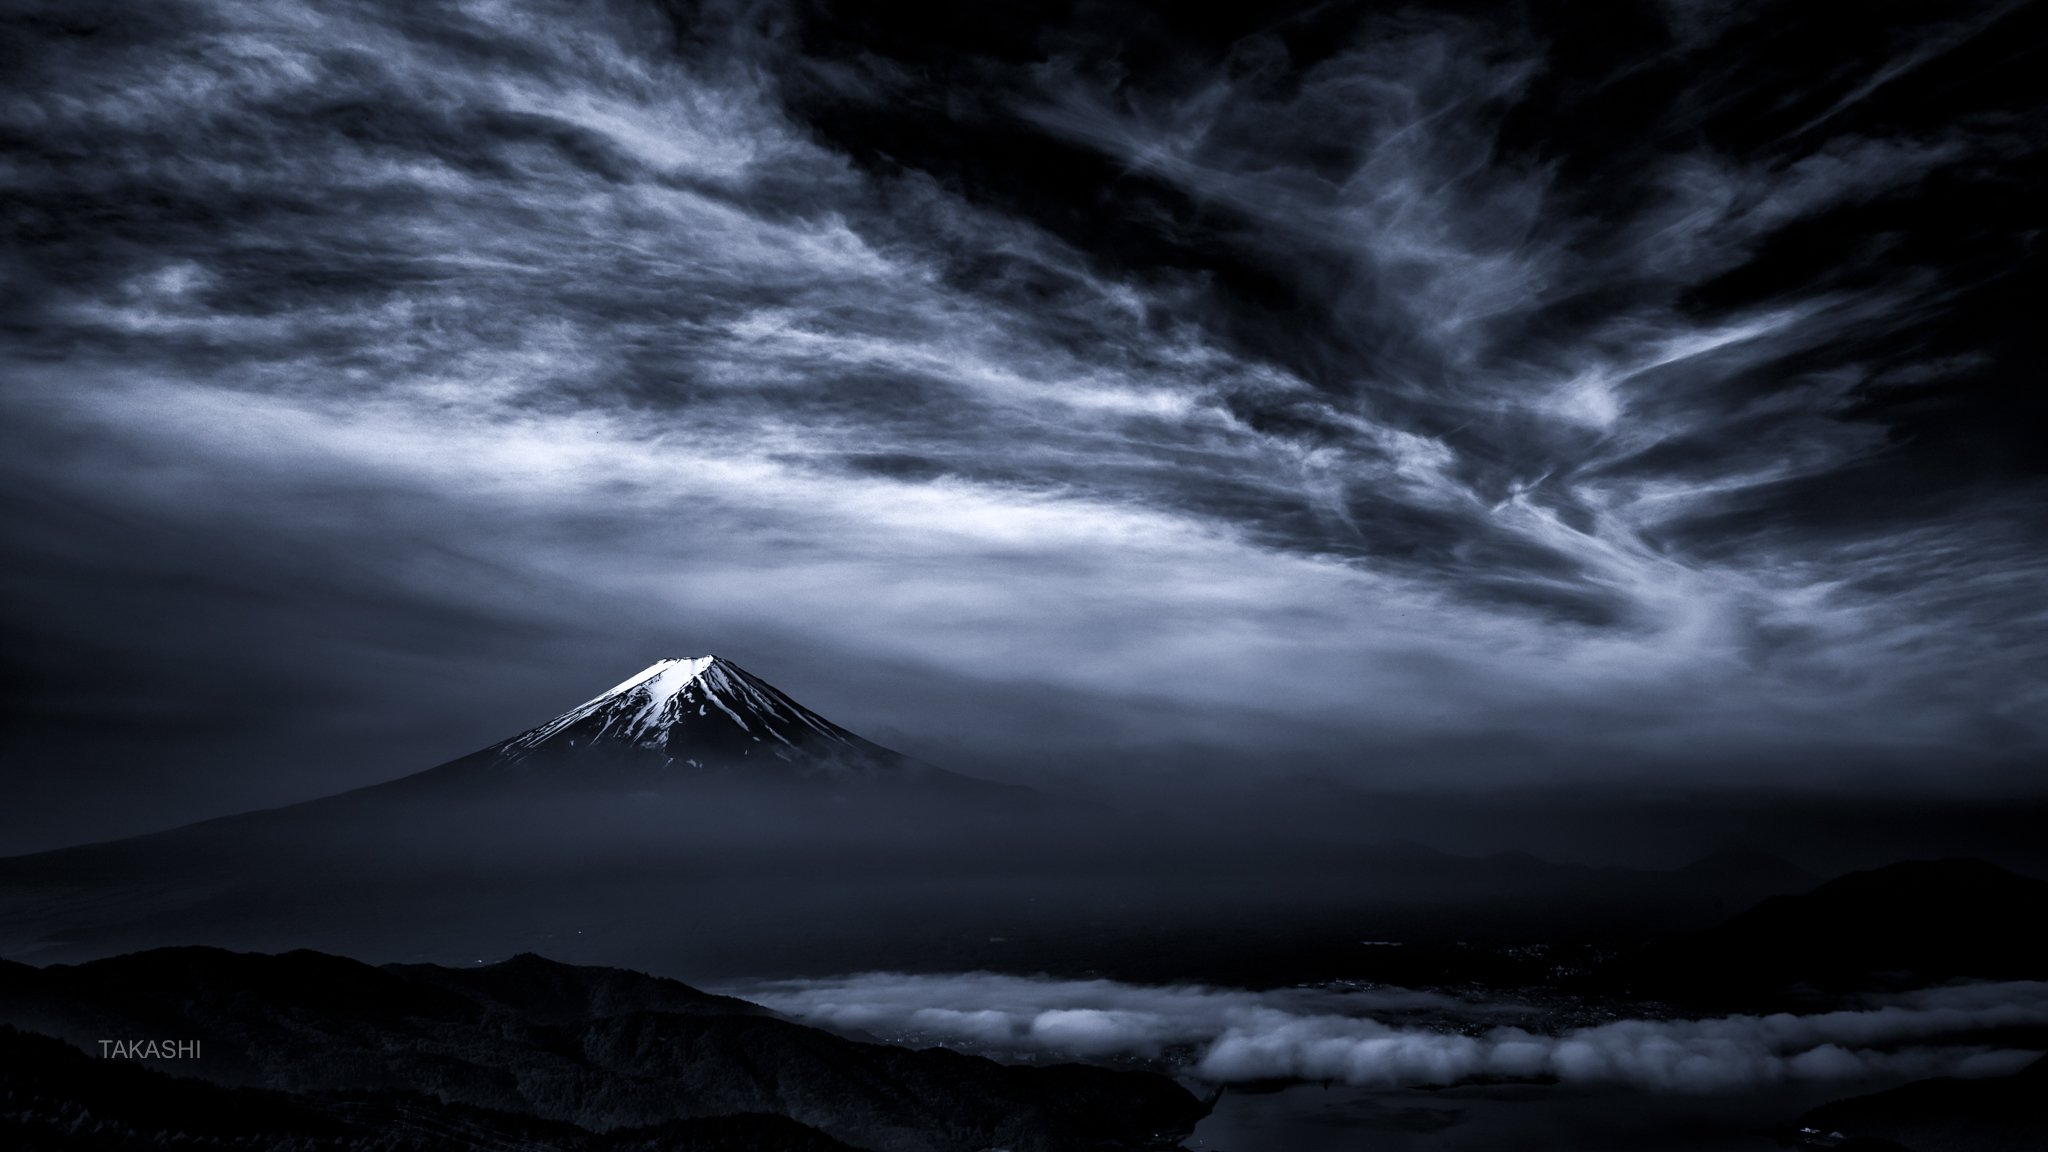 Fuji,Japan,mountain,clouds,spring,snow,lake, Takashi